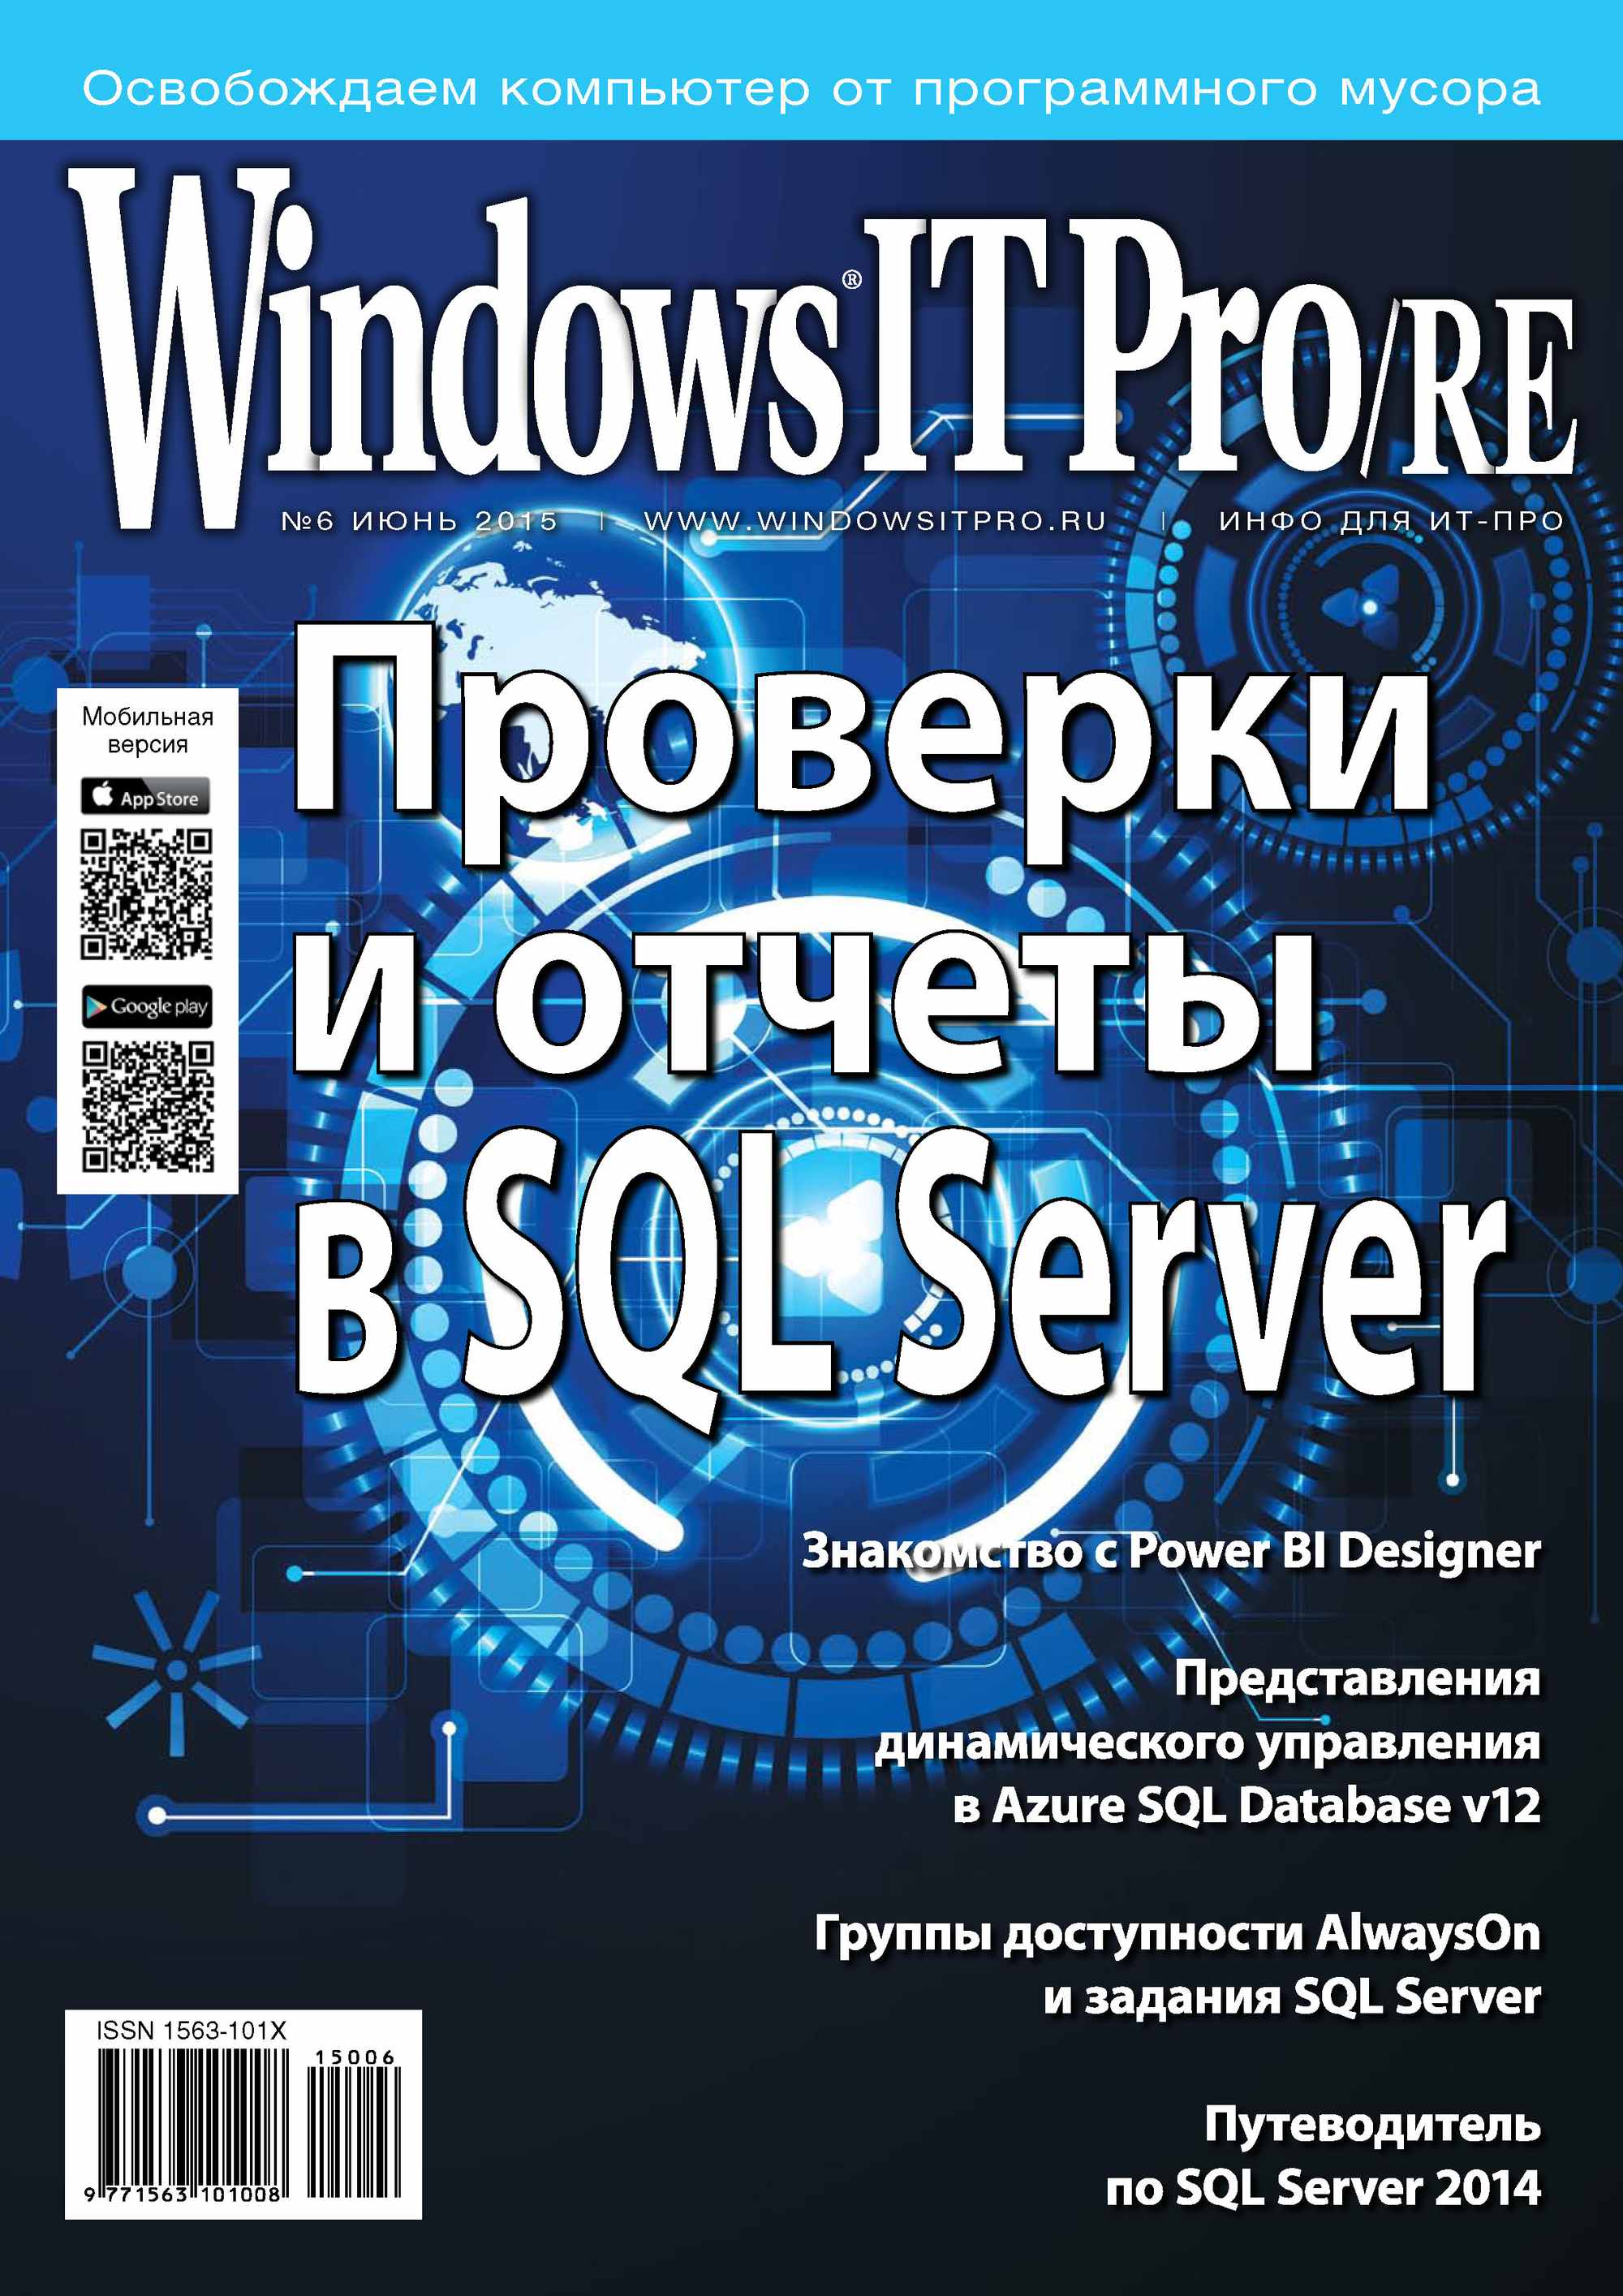 Книга Windows IT Pro 2015 Windows IT Pro/RE №06/2015 созданная Открытые системы, Открытые системы может относится к жанру компьютерные журналы, ОС и сети. Стоимость электронной книги Windows IT Pro/RE №06/2015 с идентификатором 9964099 составляет 484.00 руб.